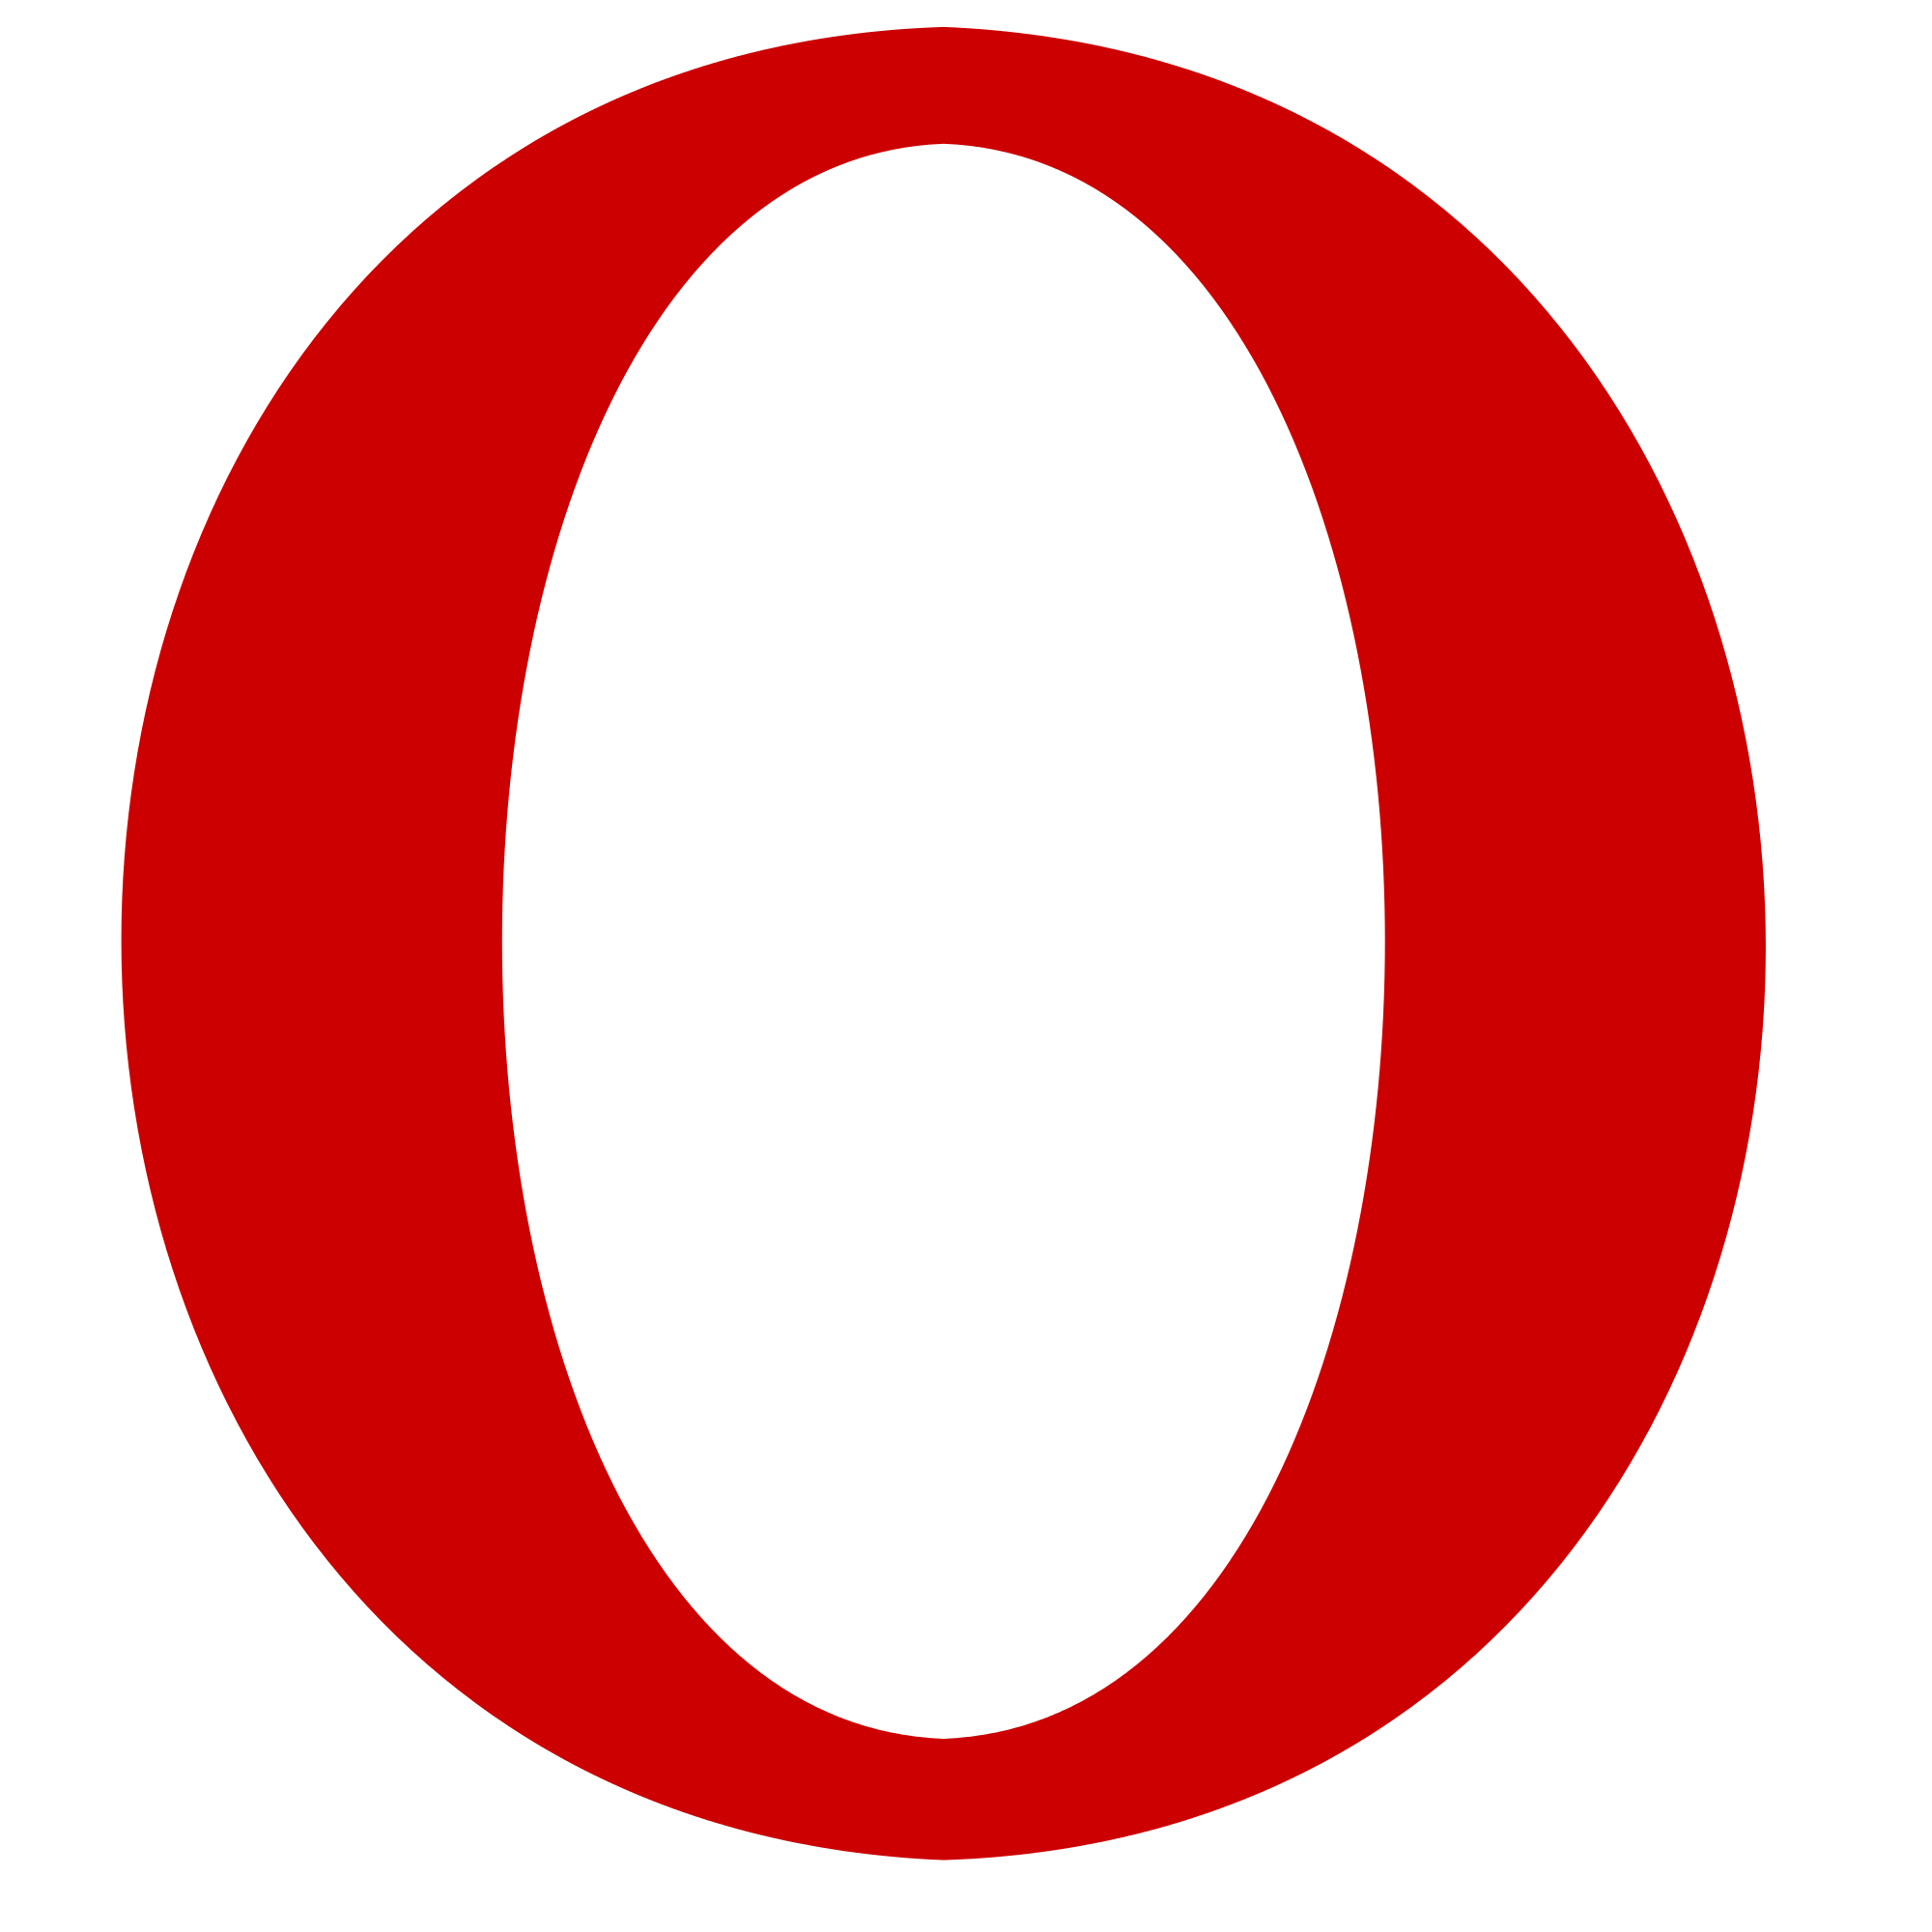 Large Red O Logo - Red o Logos